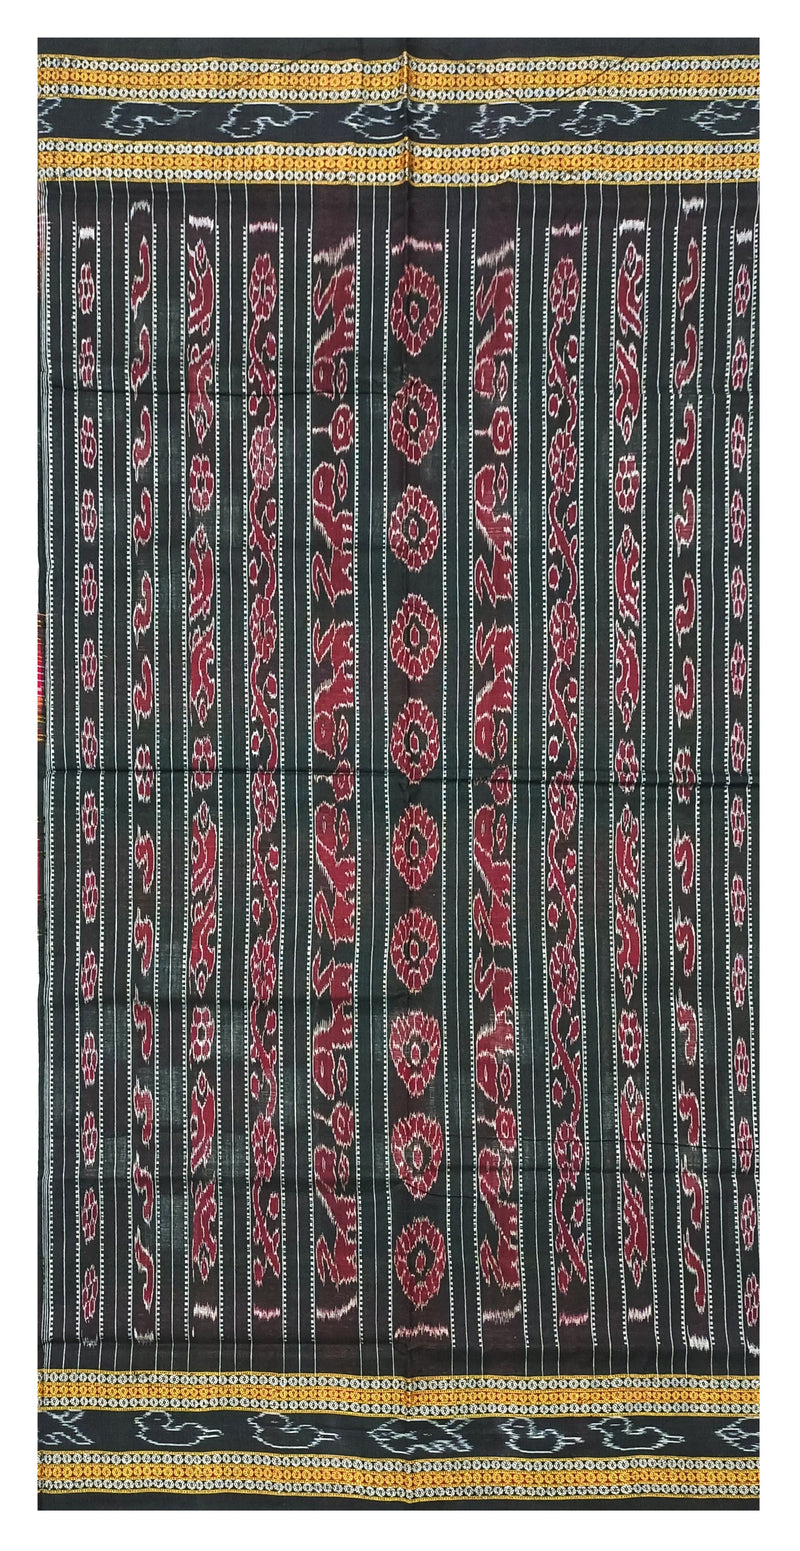 Bichitrapuri cotton saree. Red, Black colors combination